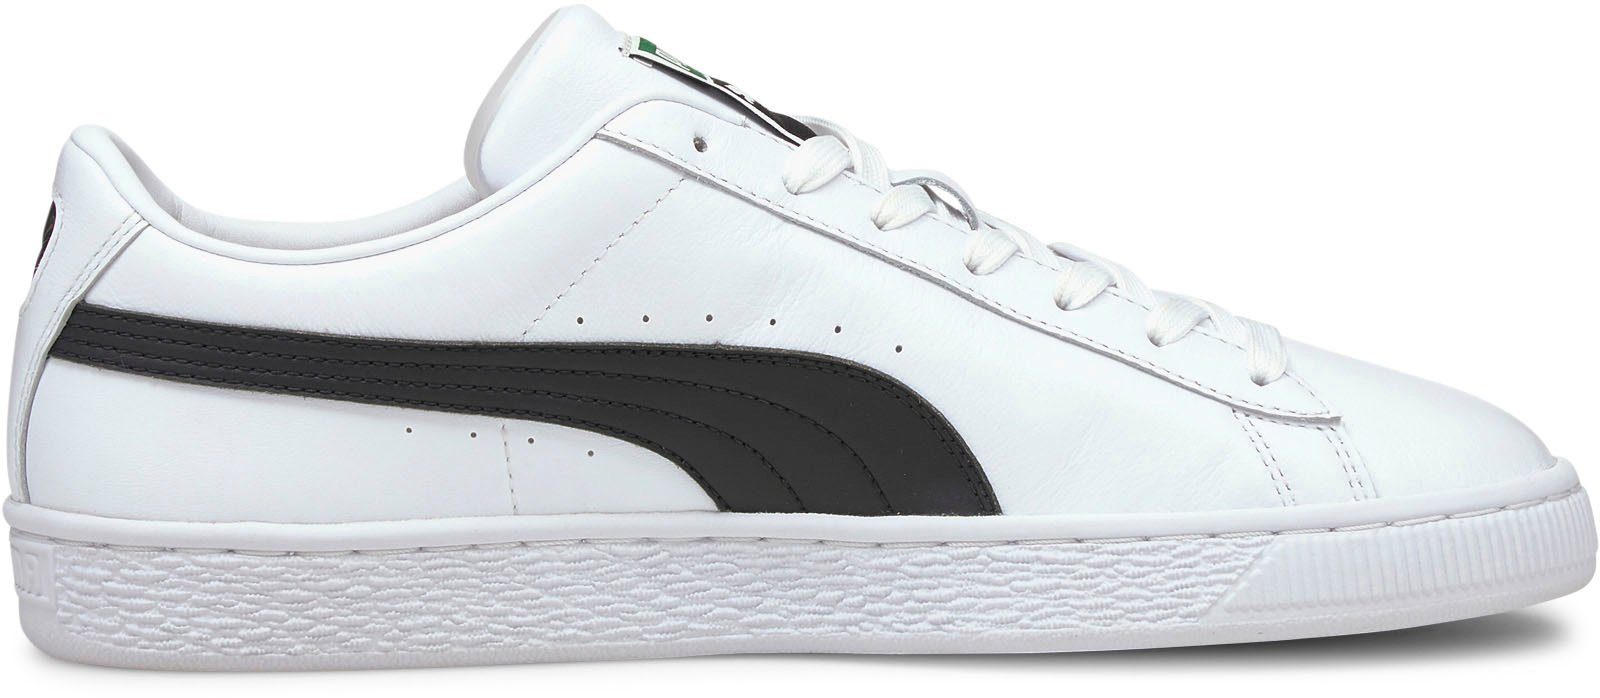 PUMA Sneaker XXI Classic weiß-schwarz Basket